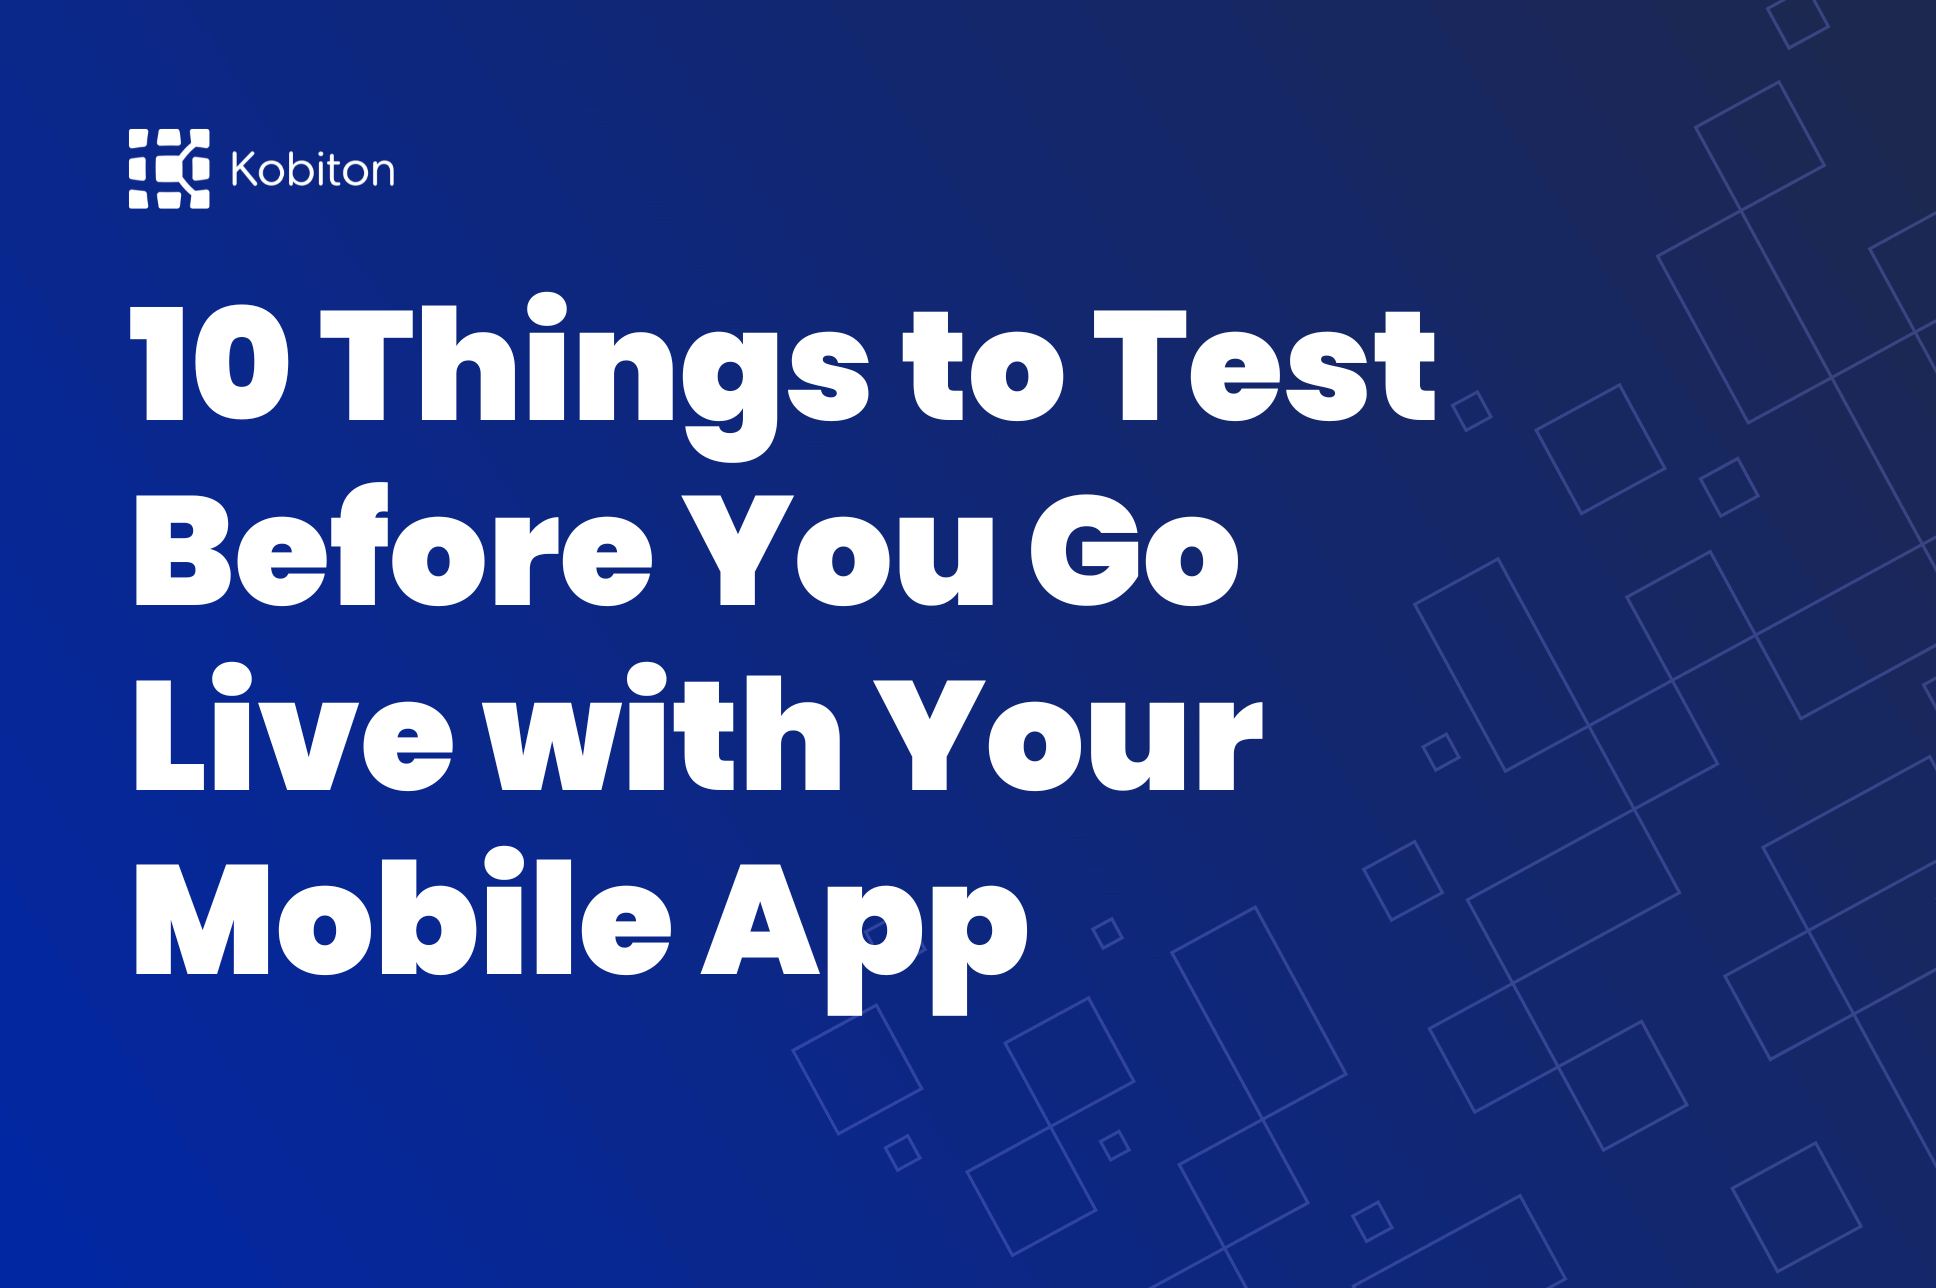 Mobile App Test blog image